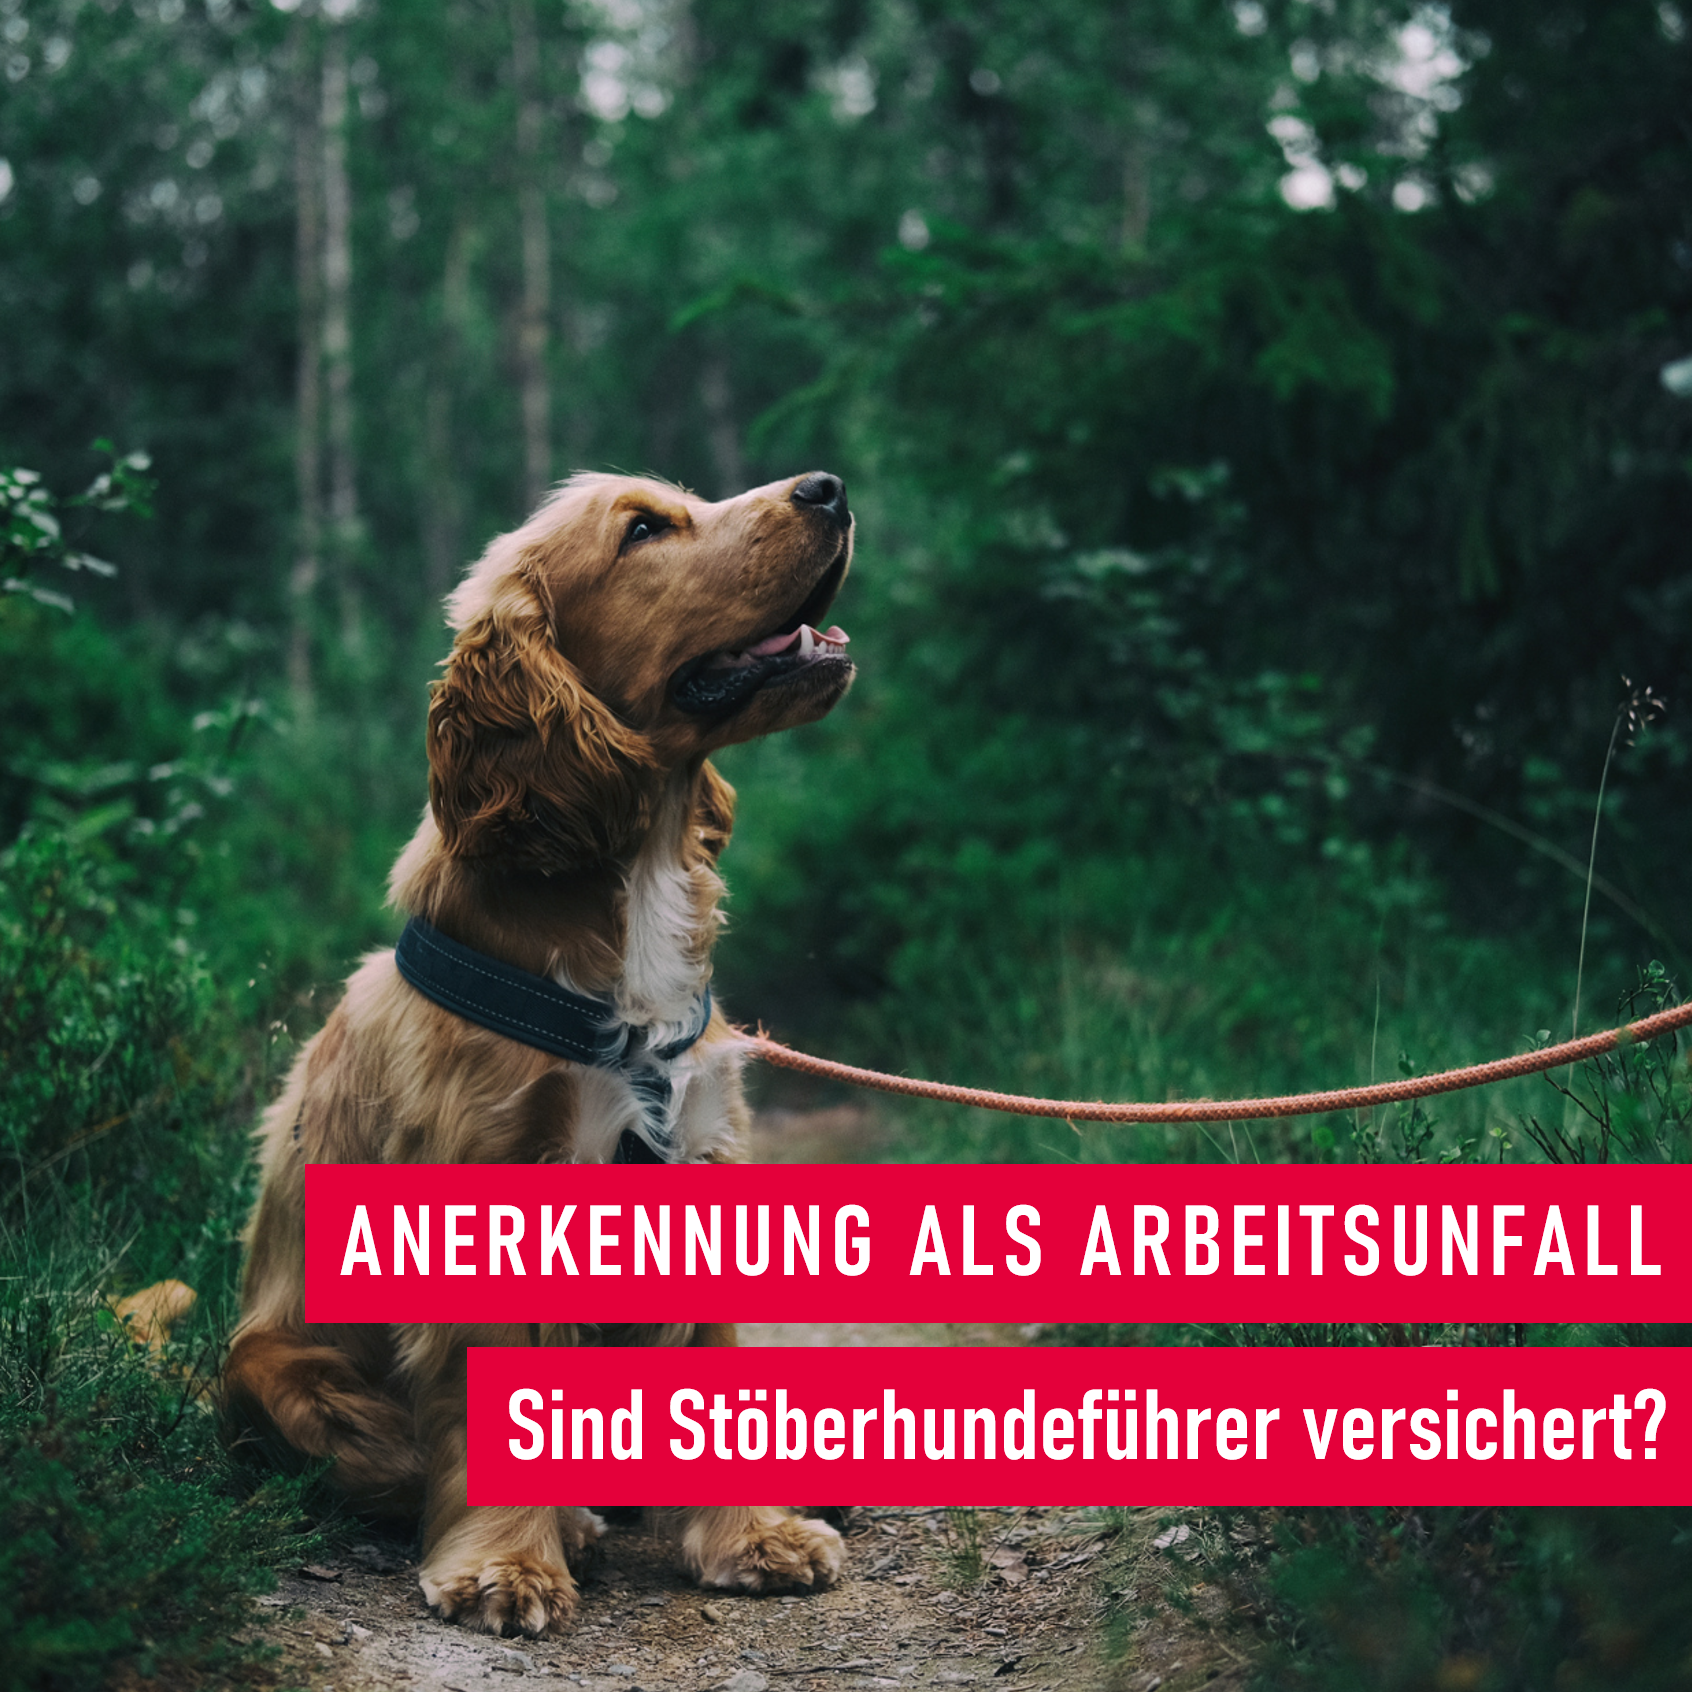 Arbeitsunfall: Sind Stöberhundeführer versichert?